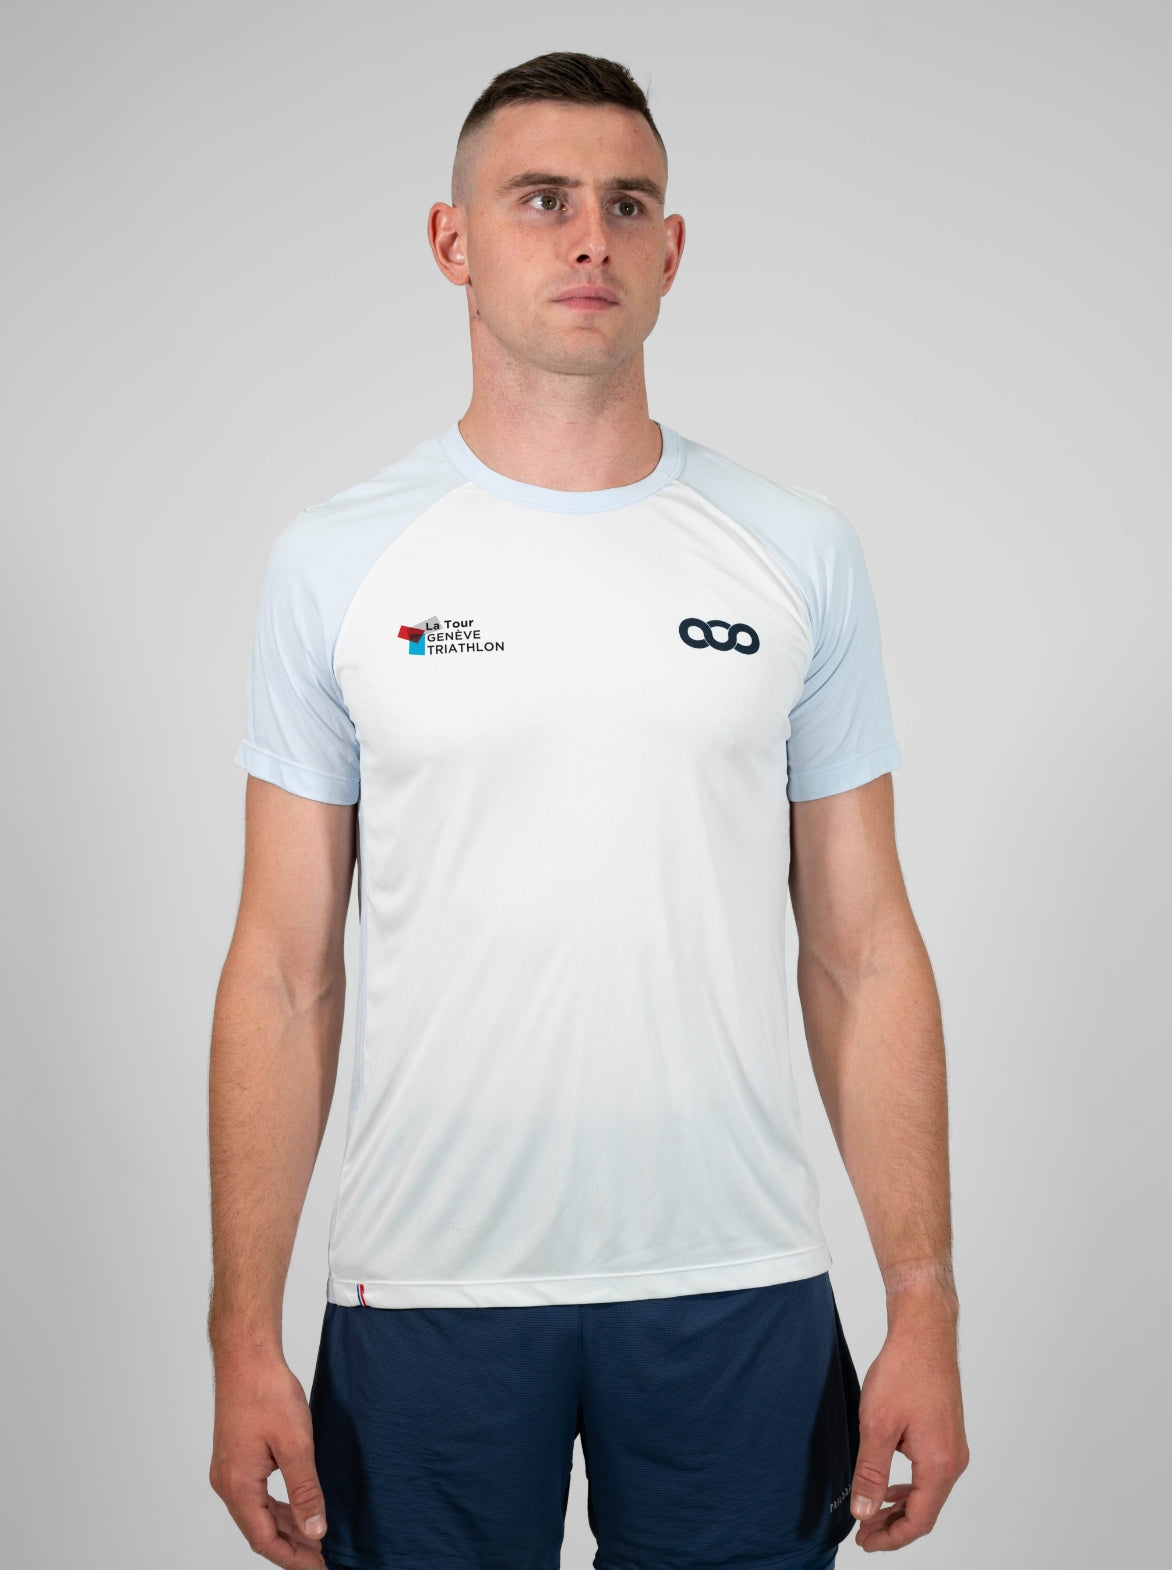 T-Shirt Running Homme Made in France et Recyclé — La Tour Genève Triathlon